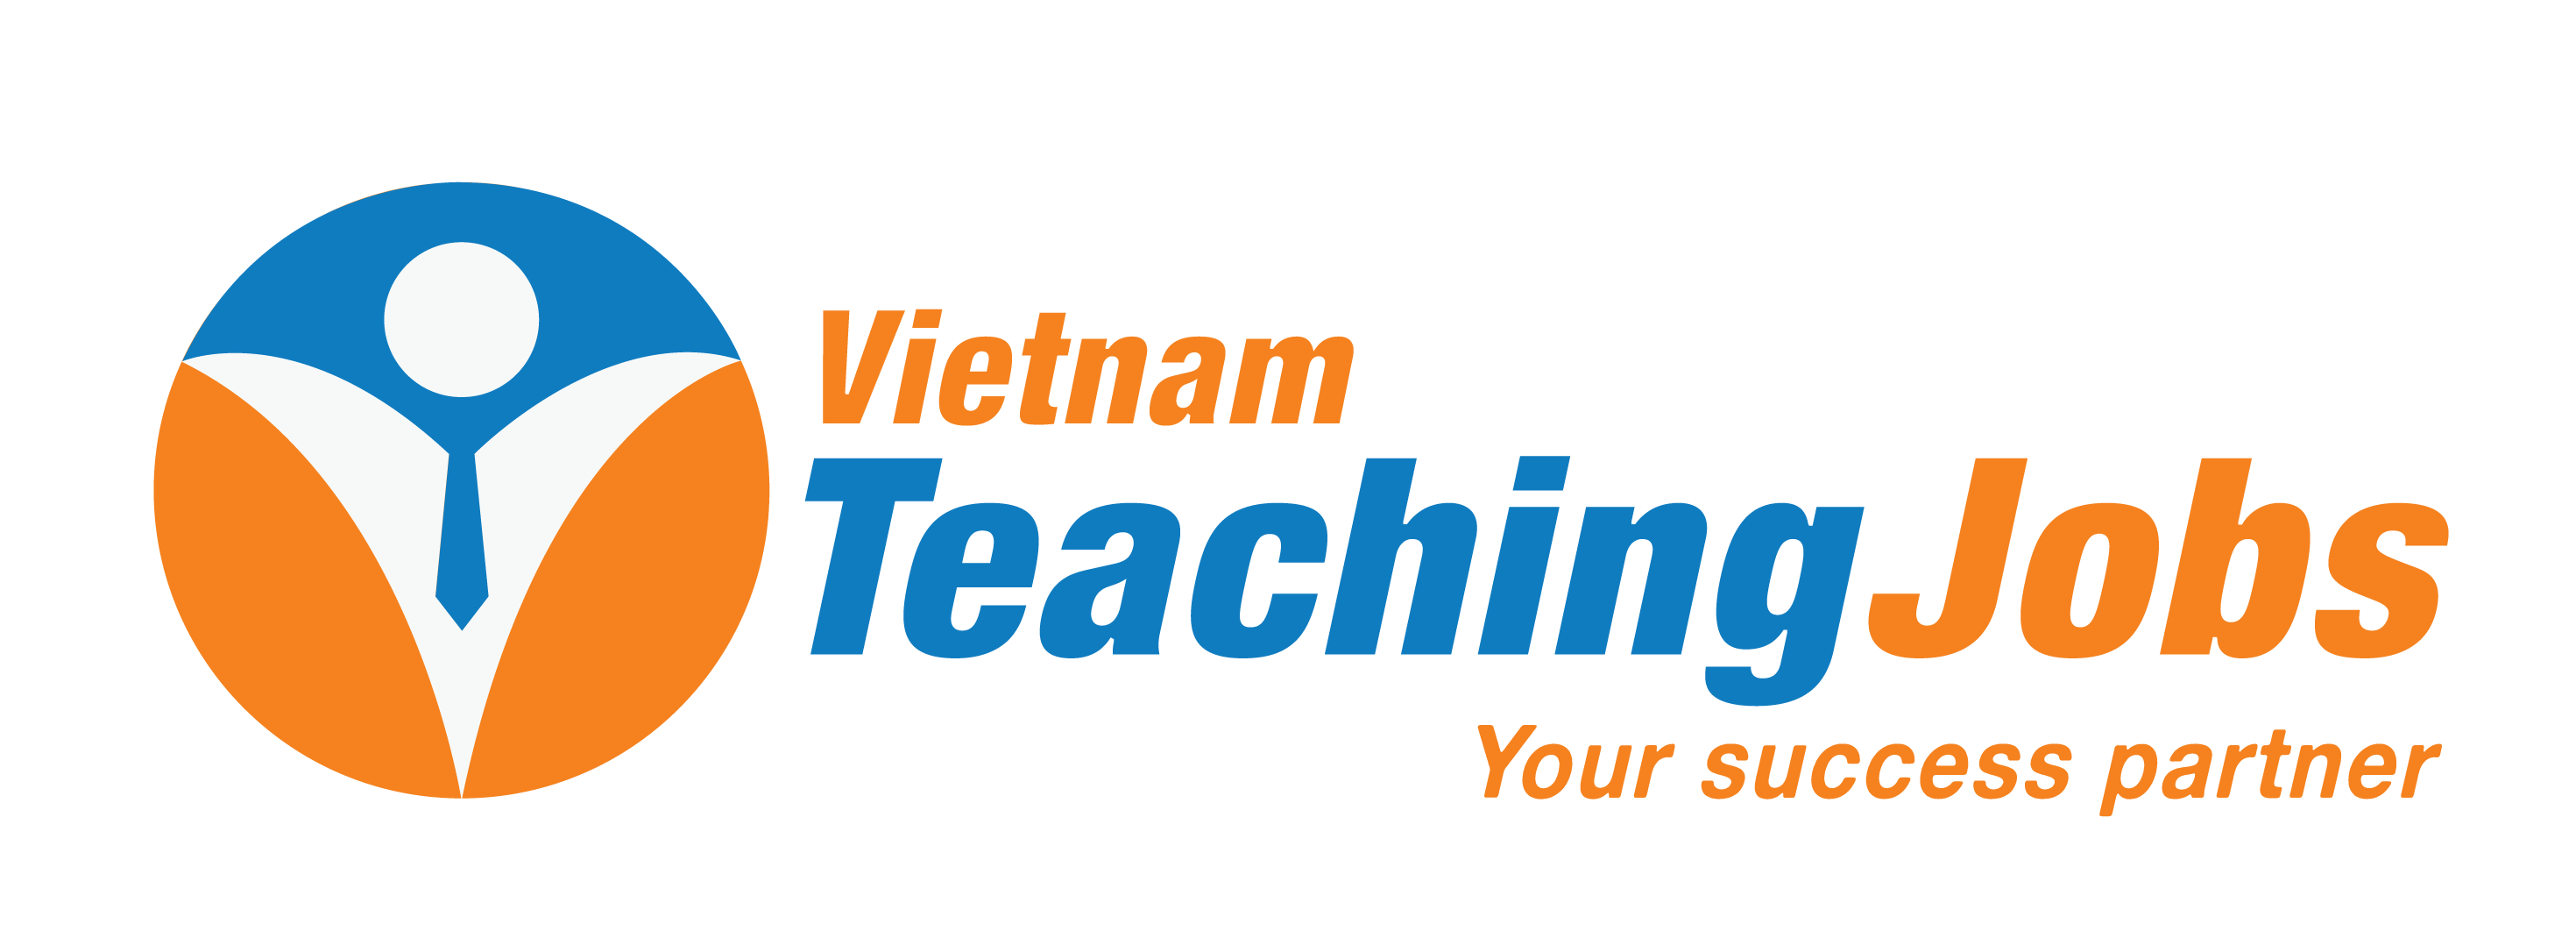 Vietnam Teaching Jobs (VTJ) là một trang web tuyển dụng việc làm giáo dục chuyên nghiệp tại Việt Nam